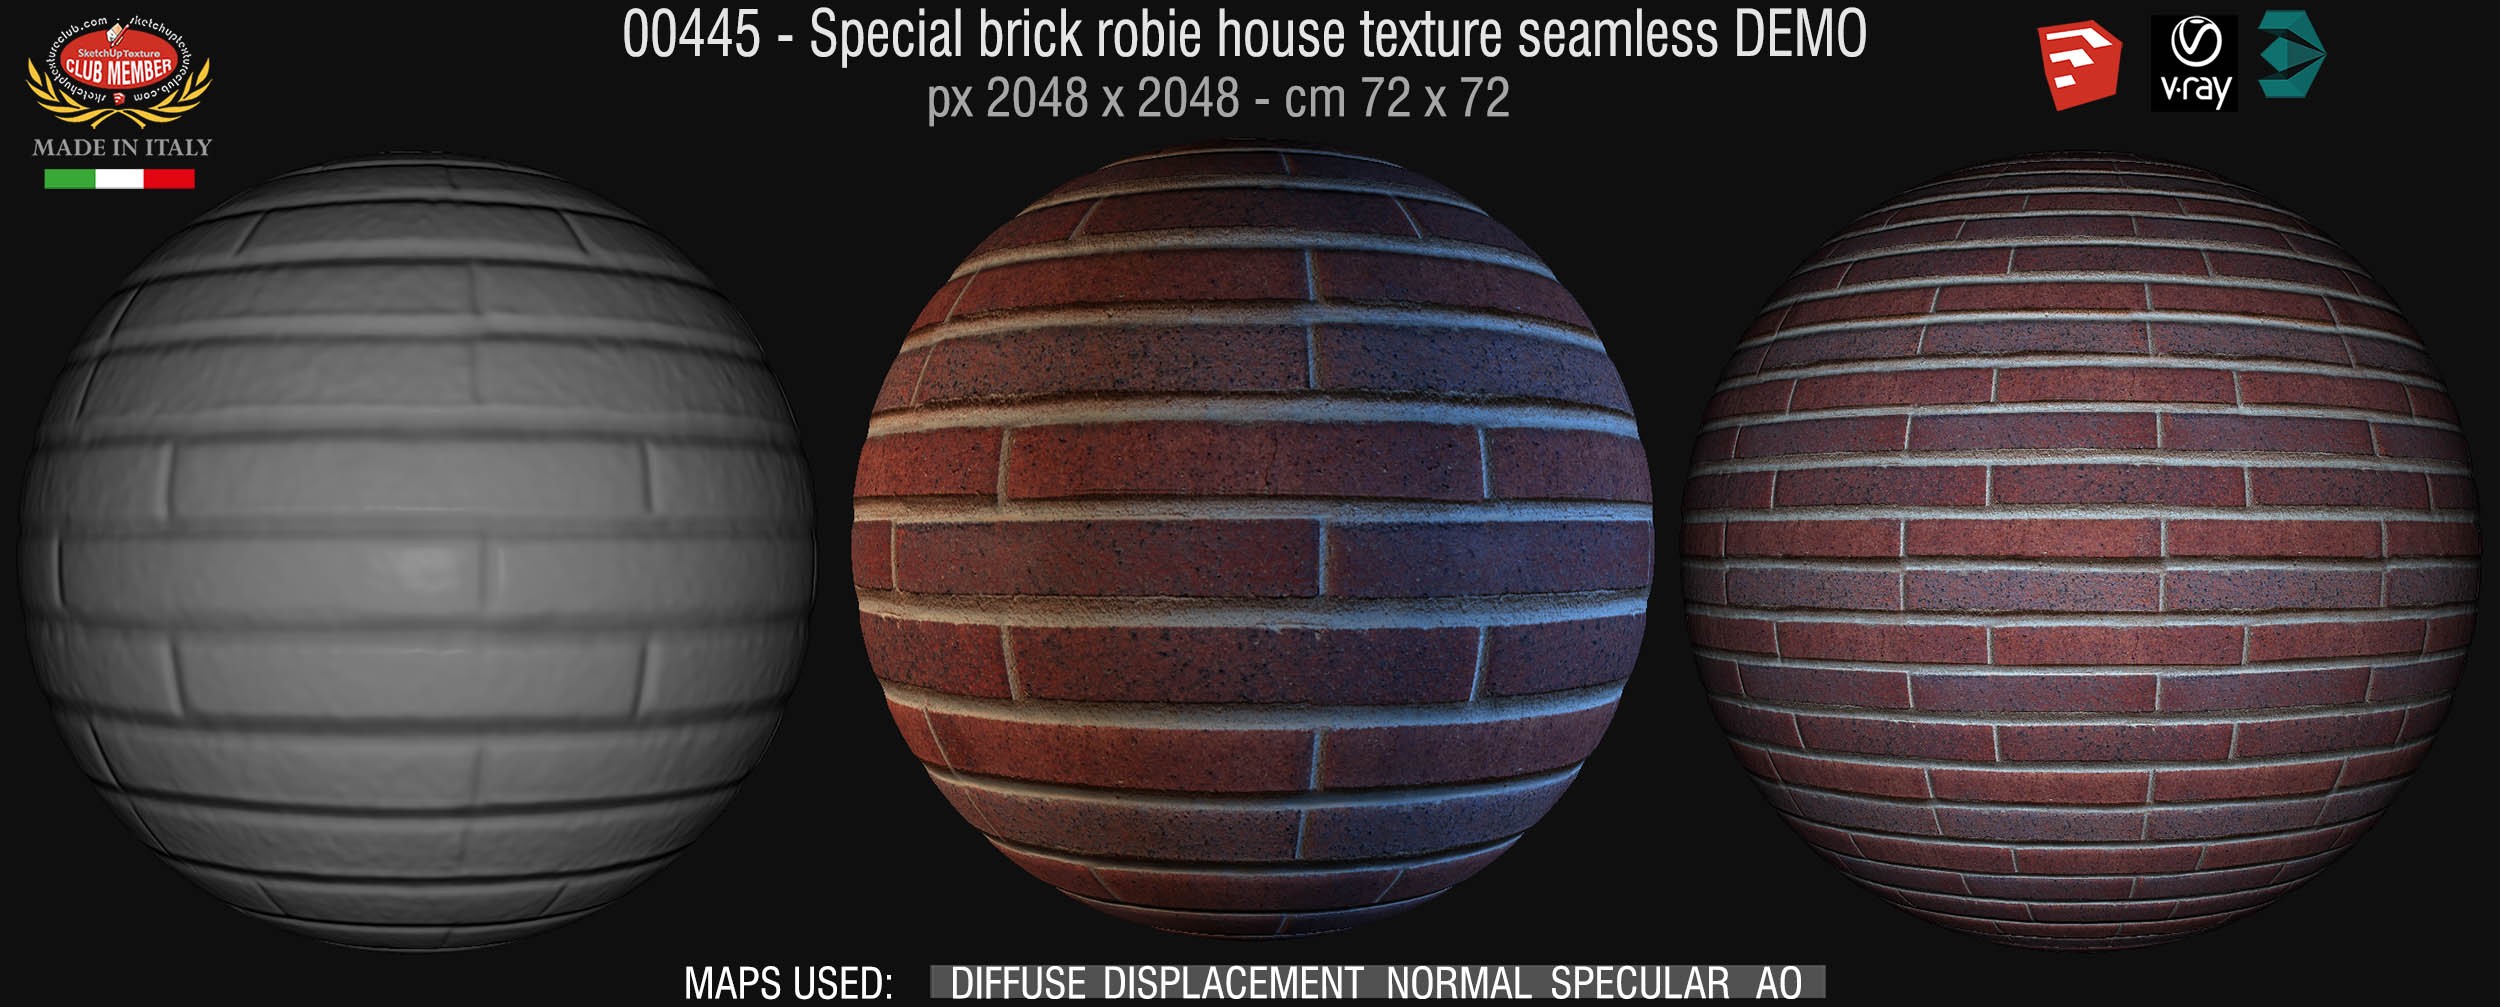 00445 Special brick robie house texture seamless + maps DEMO